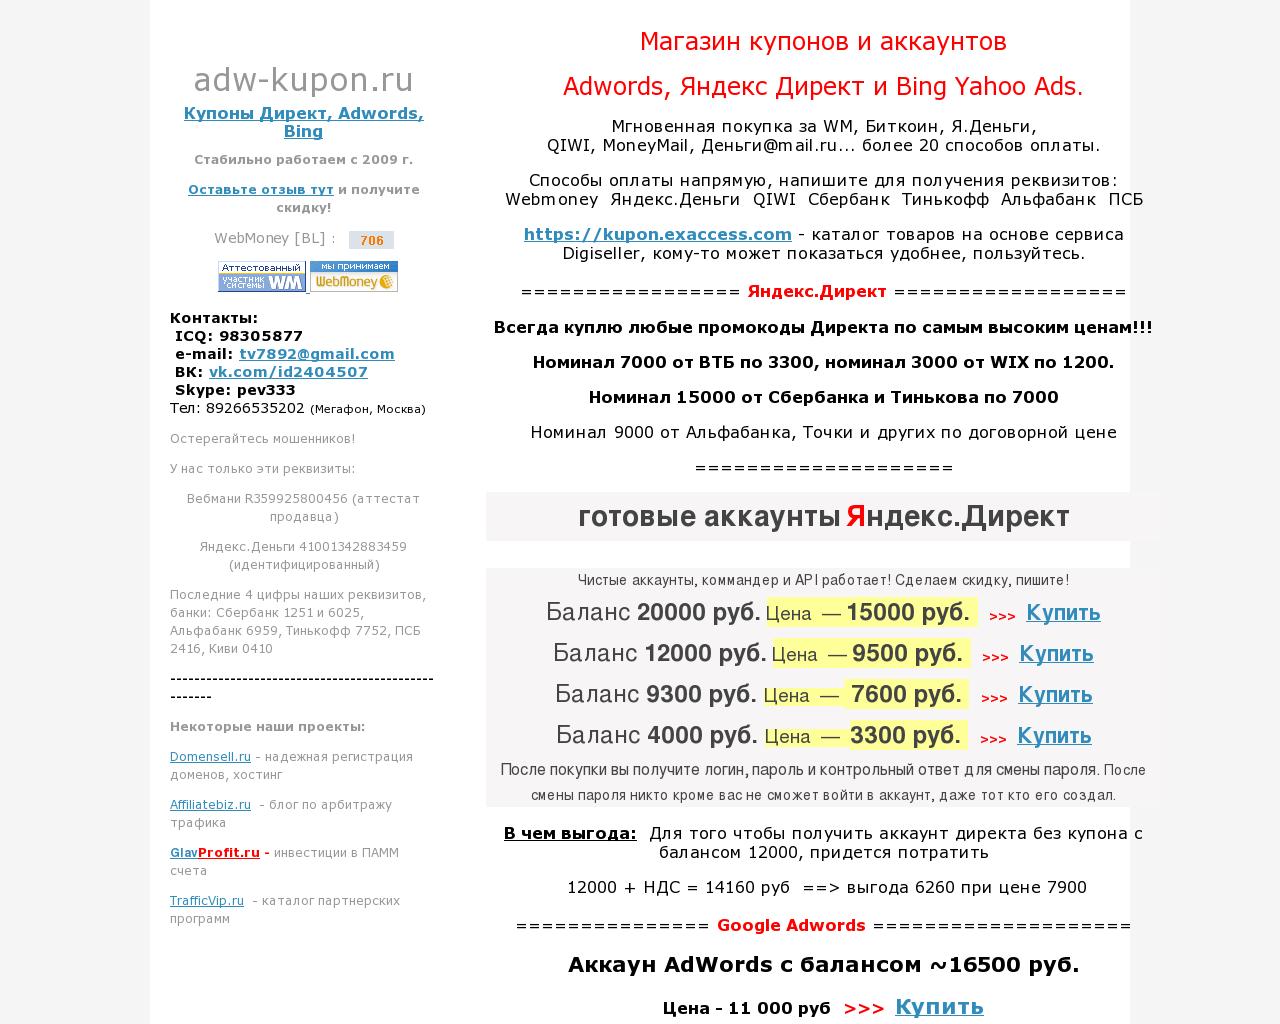 Изображение сайта adwords-coupons.ru в разрешении 1280x1024